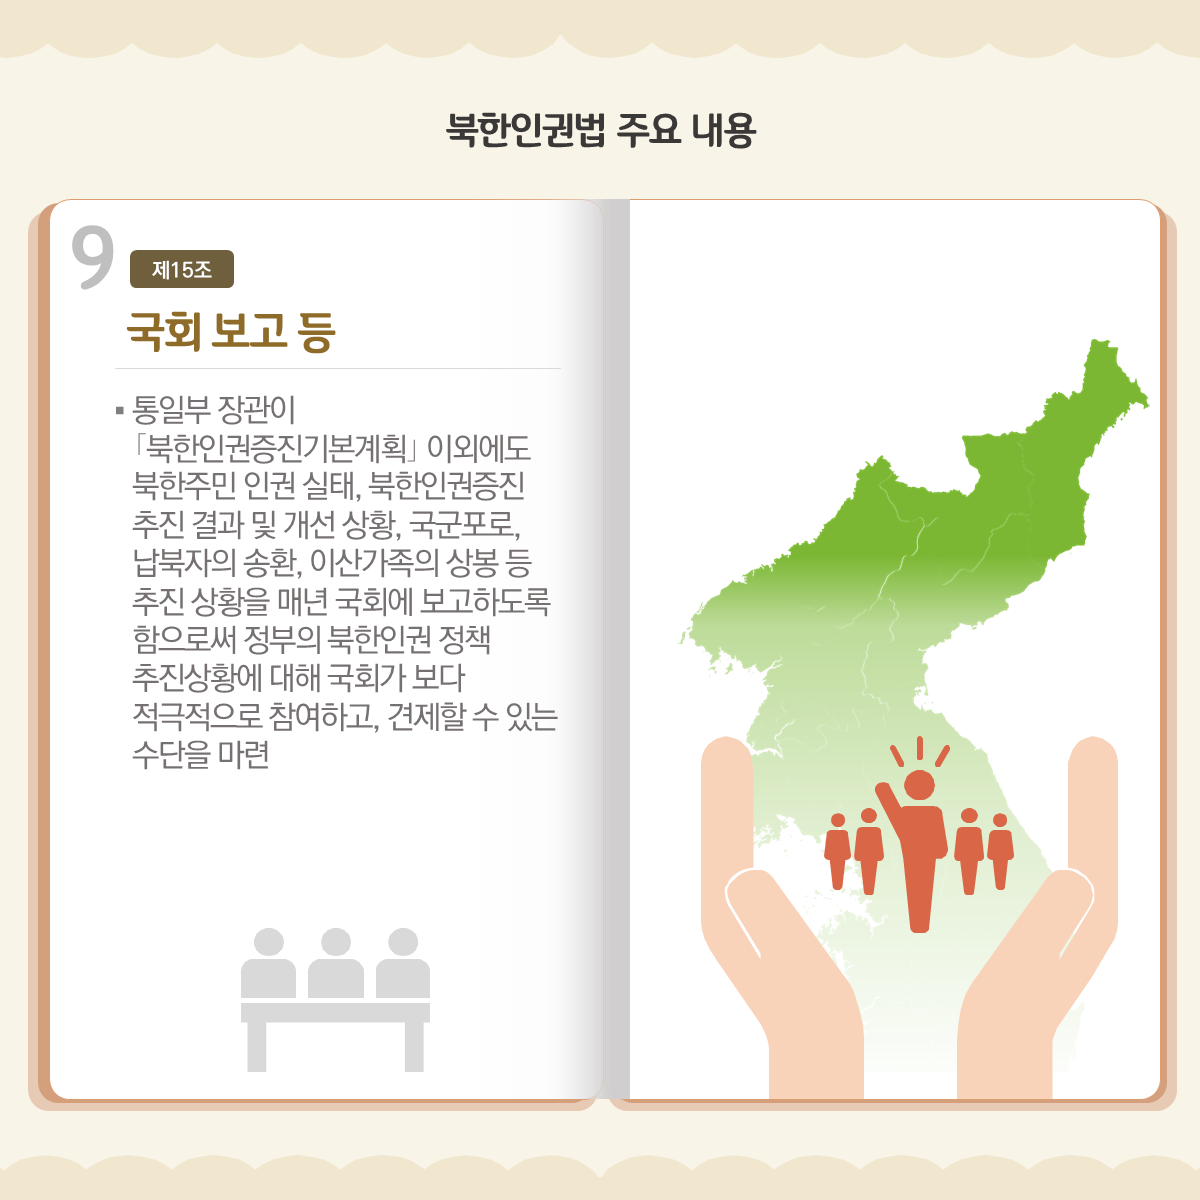 북한인권법 주요 내용
국회 보고 등